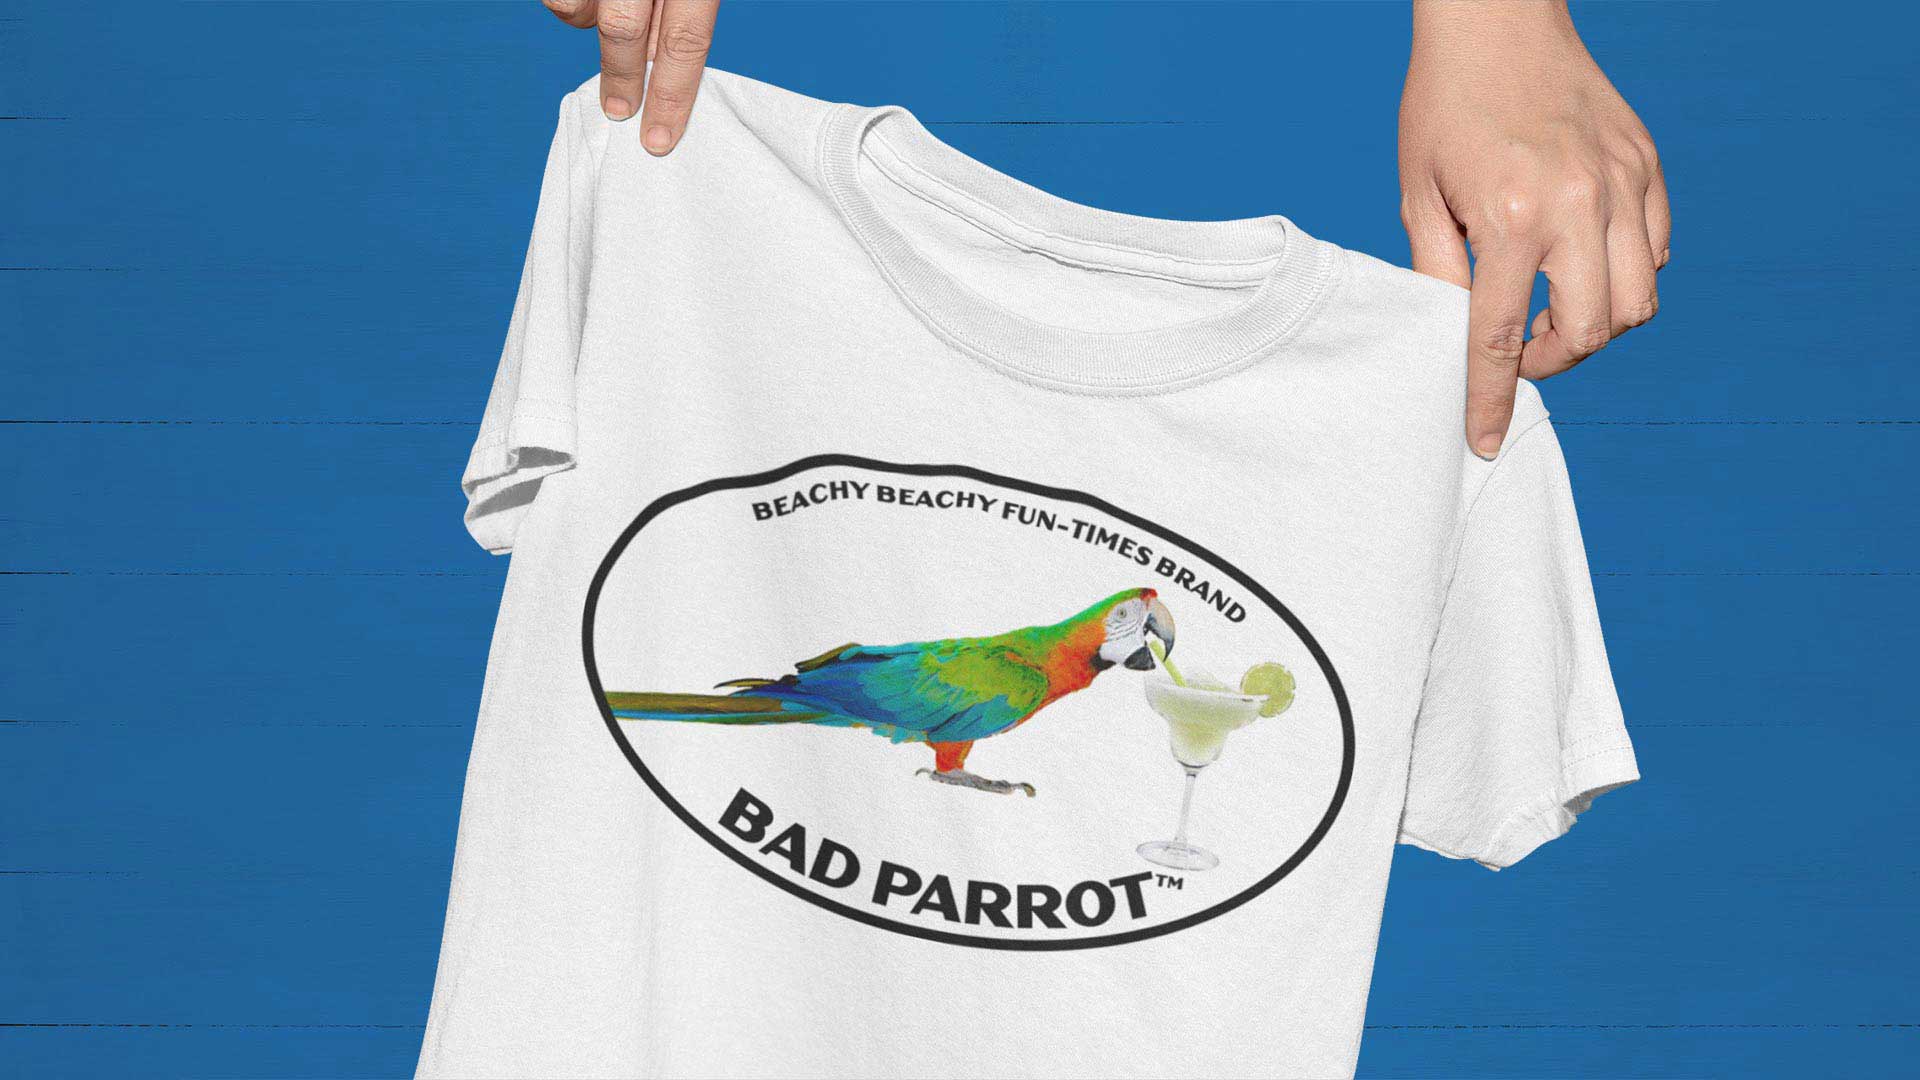 Bad Parrot Tees, Hoodies, Bags & More